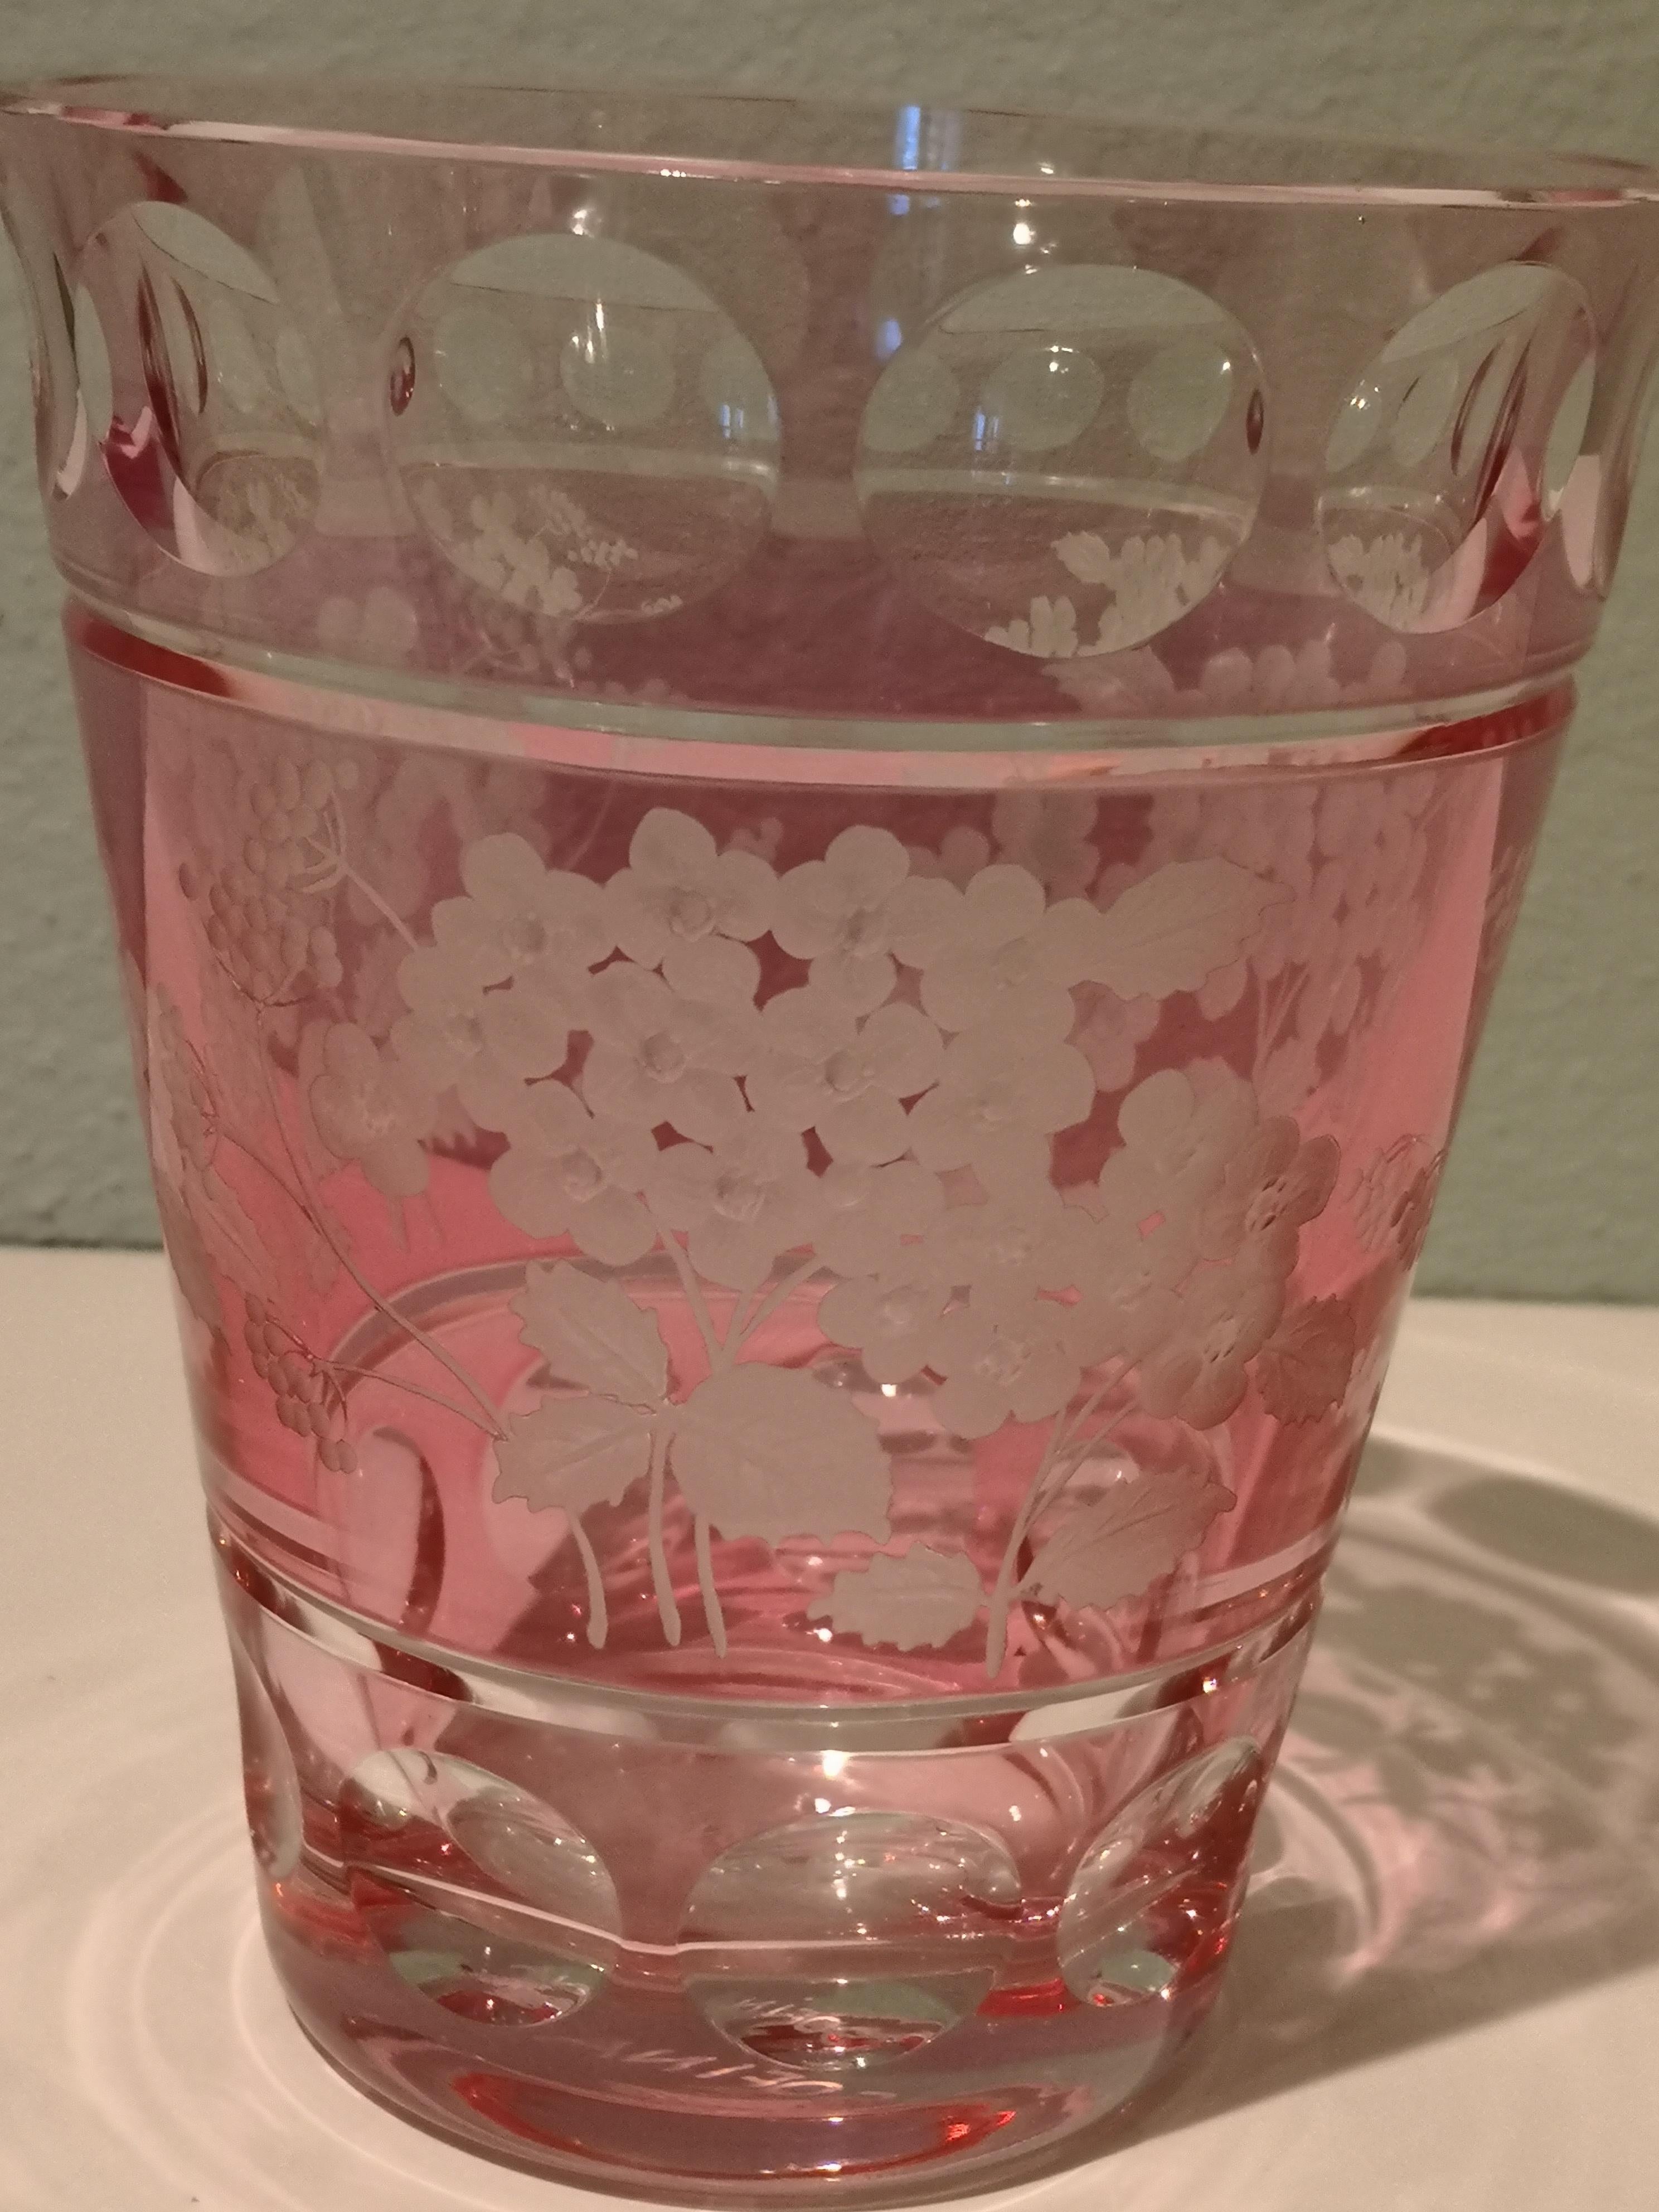 Vase aus mundgeblasenem Kristall in Hellrosa mit einem handgravierten Blumendekor rundherum. Das Dekor zeigt Blüten und Blätter von Hortensienblüten im Landhausstil. Vollständig handgefertigtes Kristallglas. Handgeblasen und freihändig graviert in